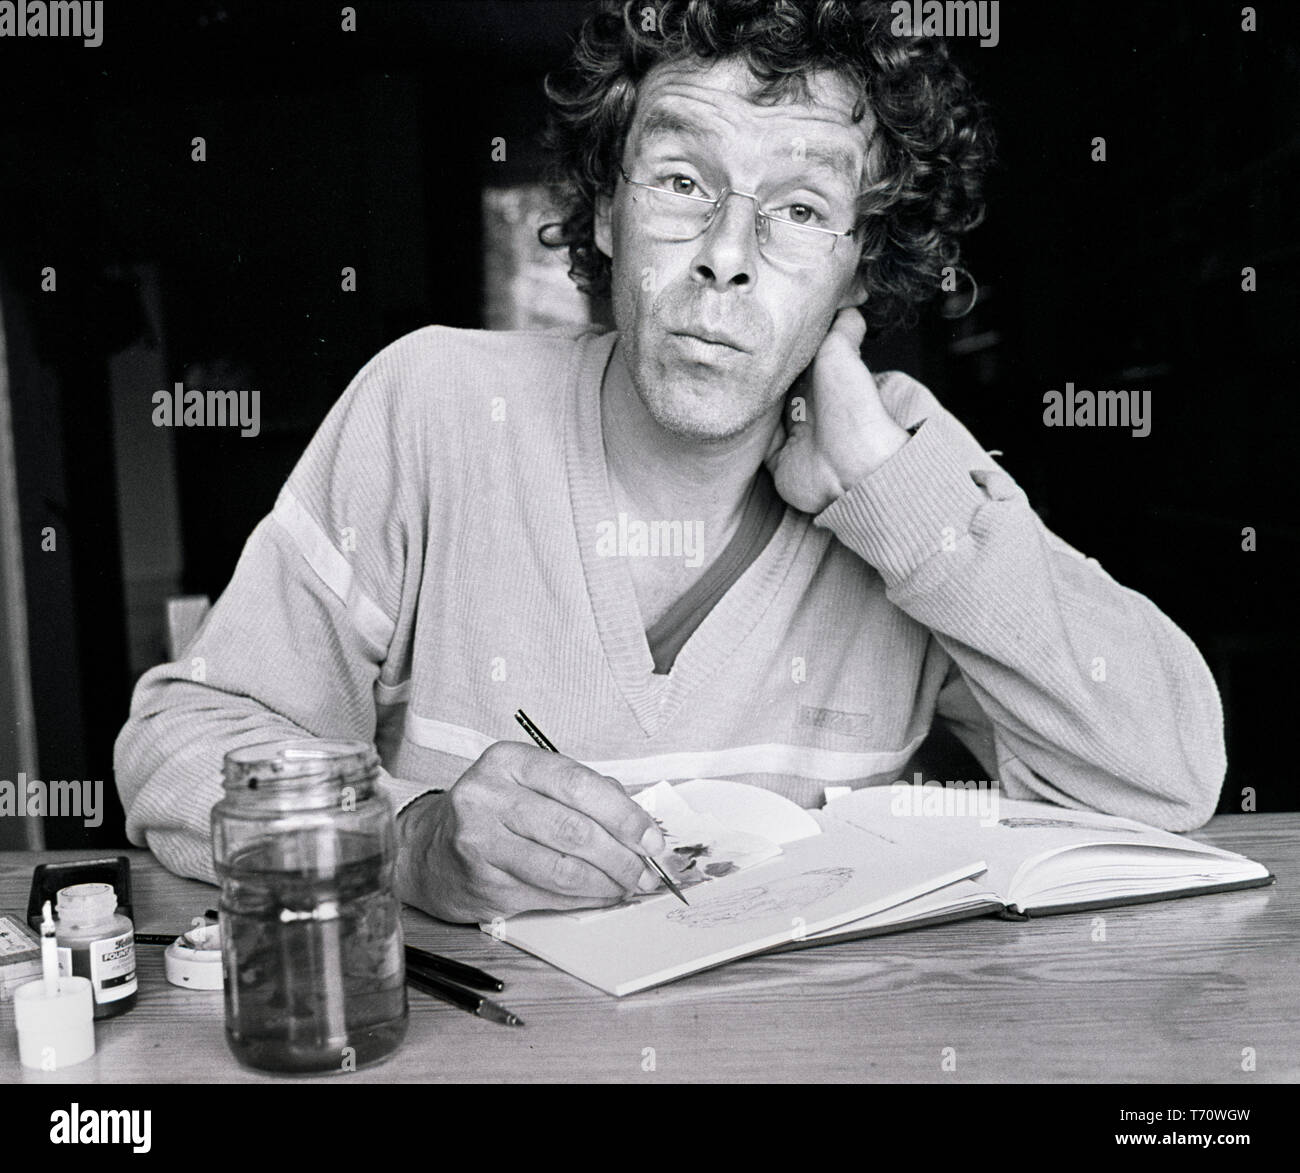 L'illustrateur de l'art néerlandais Peter Vos, posant dans son atelier. Pays-bas, ca 1975 (Photo Gijsbert Hanekroot) Banque D'Images